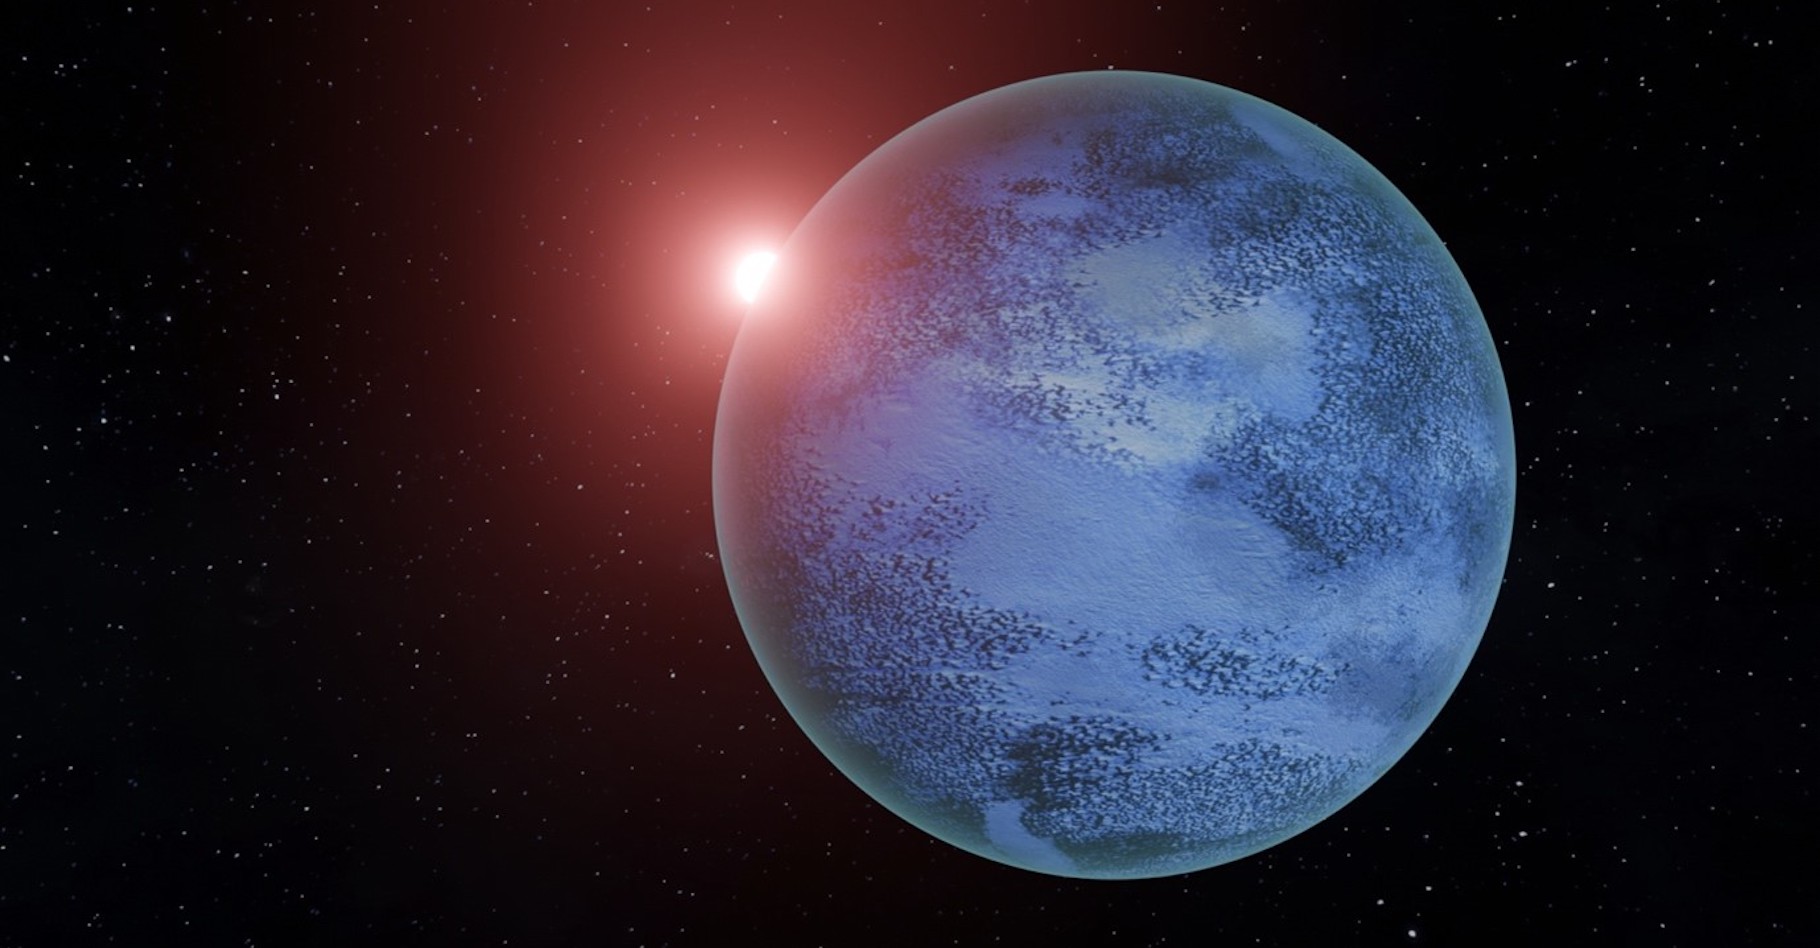 Des chercheurs de l’université Rutgers (États-Unis) estiment qu’il pourrait exister de nombreuses planètes rocheuses présentant de l’eau liquide sous une surface gelée. Ici, une vue d’artiste. © Lujendra Ojha, Université Rutgers